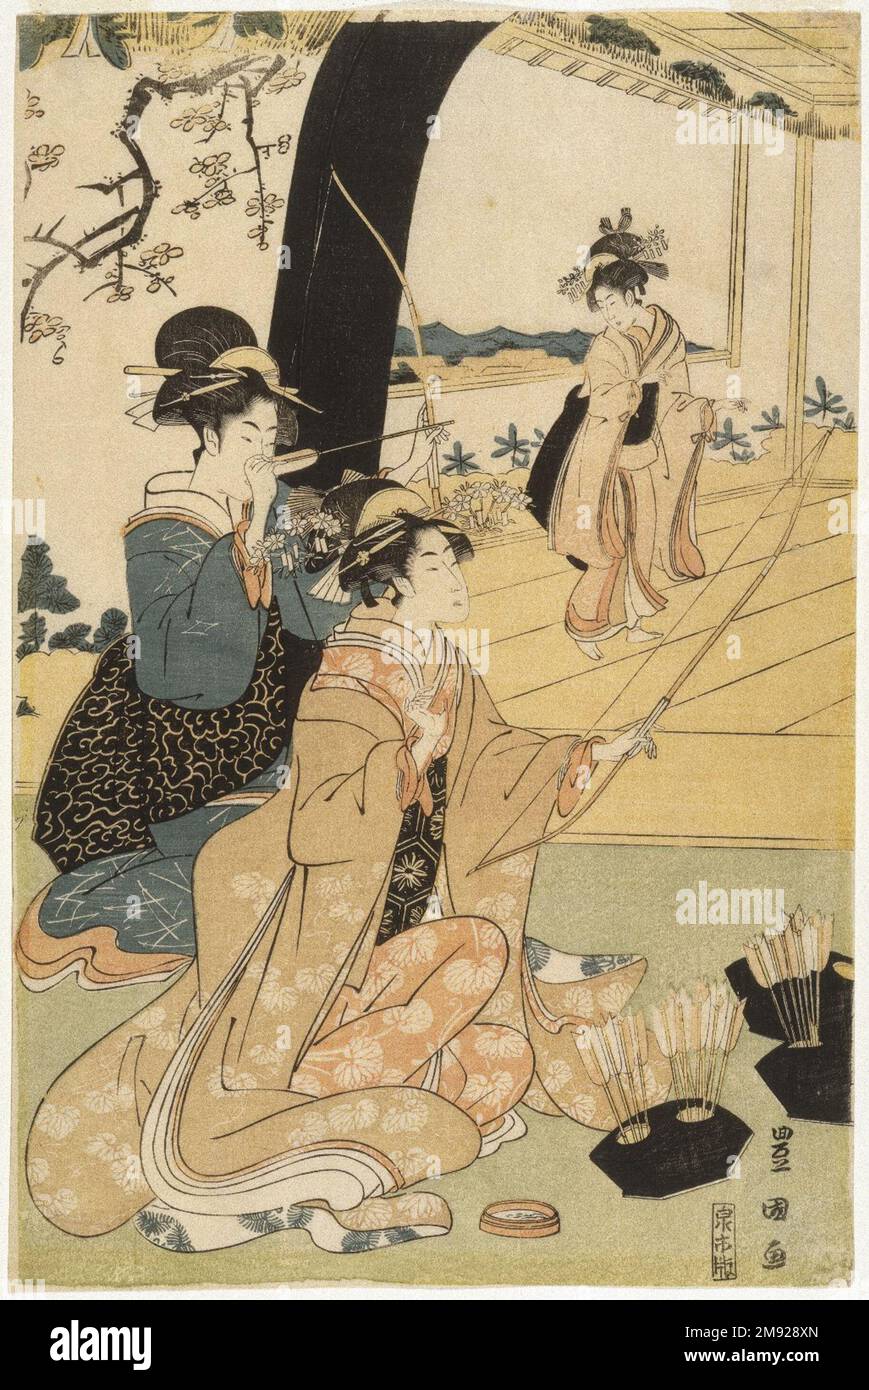 Giovani Samurai e presenze femminili che praticano la Tiro con l'Arco, metà di un Diptych Utagawa Toyokuni i (giapponese, 1769-1825). Giovani Samurai e prescieri femminili che praticano la Tiro con l'Arco, metà di un Dittico, ca. 1800. Stampa woodblock, 15 1/8 x 10 pollici (38,4 x 25,4 cm). Oltre alle sue celebri stampe d'attore kabuki, Toyokuni eccelse a immagini di belle donne, incorporando il tipo di figura lunga e lithe che era entrato in voga con l'opera di Kitagawa Utamaro (1750-1806) e di Torii Kiyonaga (1752-1815) nei decenni precedenti. Il tiro con l'arco era un'attività raffinata associata alla classe dei guerrieri samurai; th Foto Stock